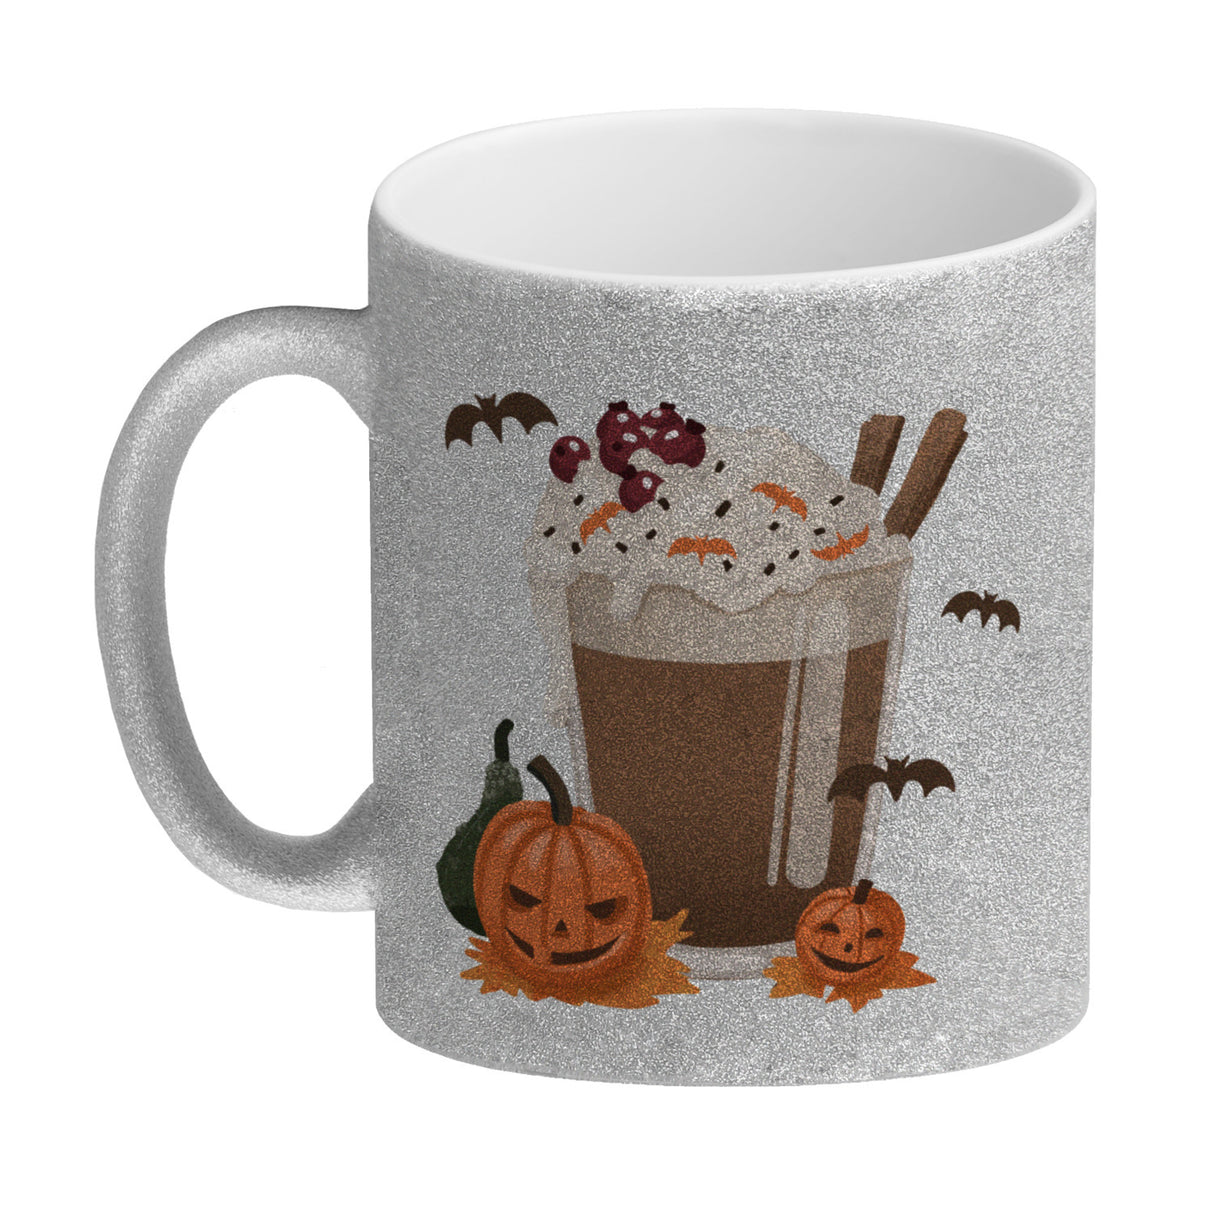 Pumpkin Spice Latte Kaffeebecher für Halloween